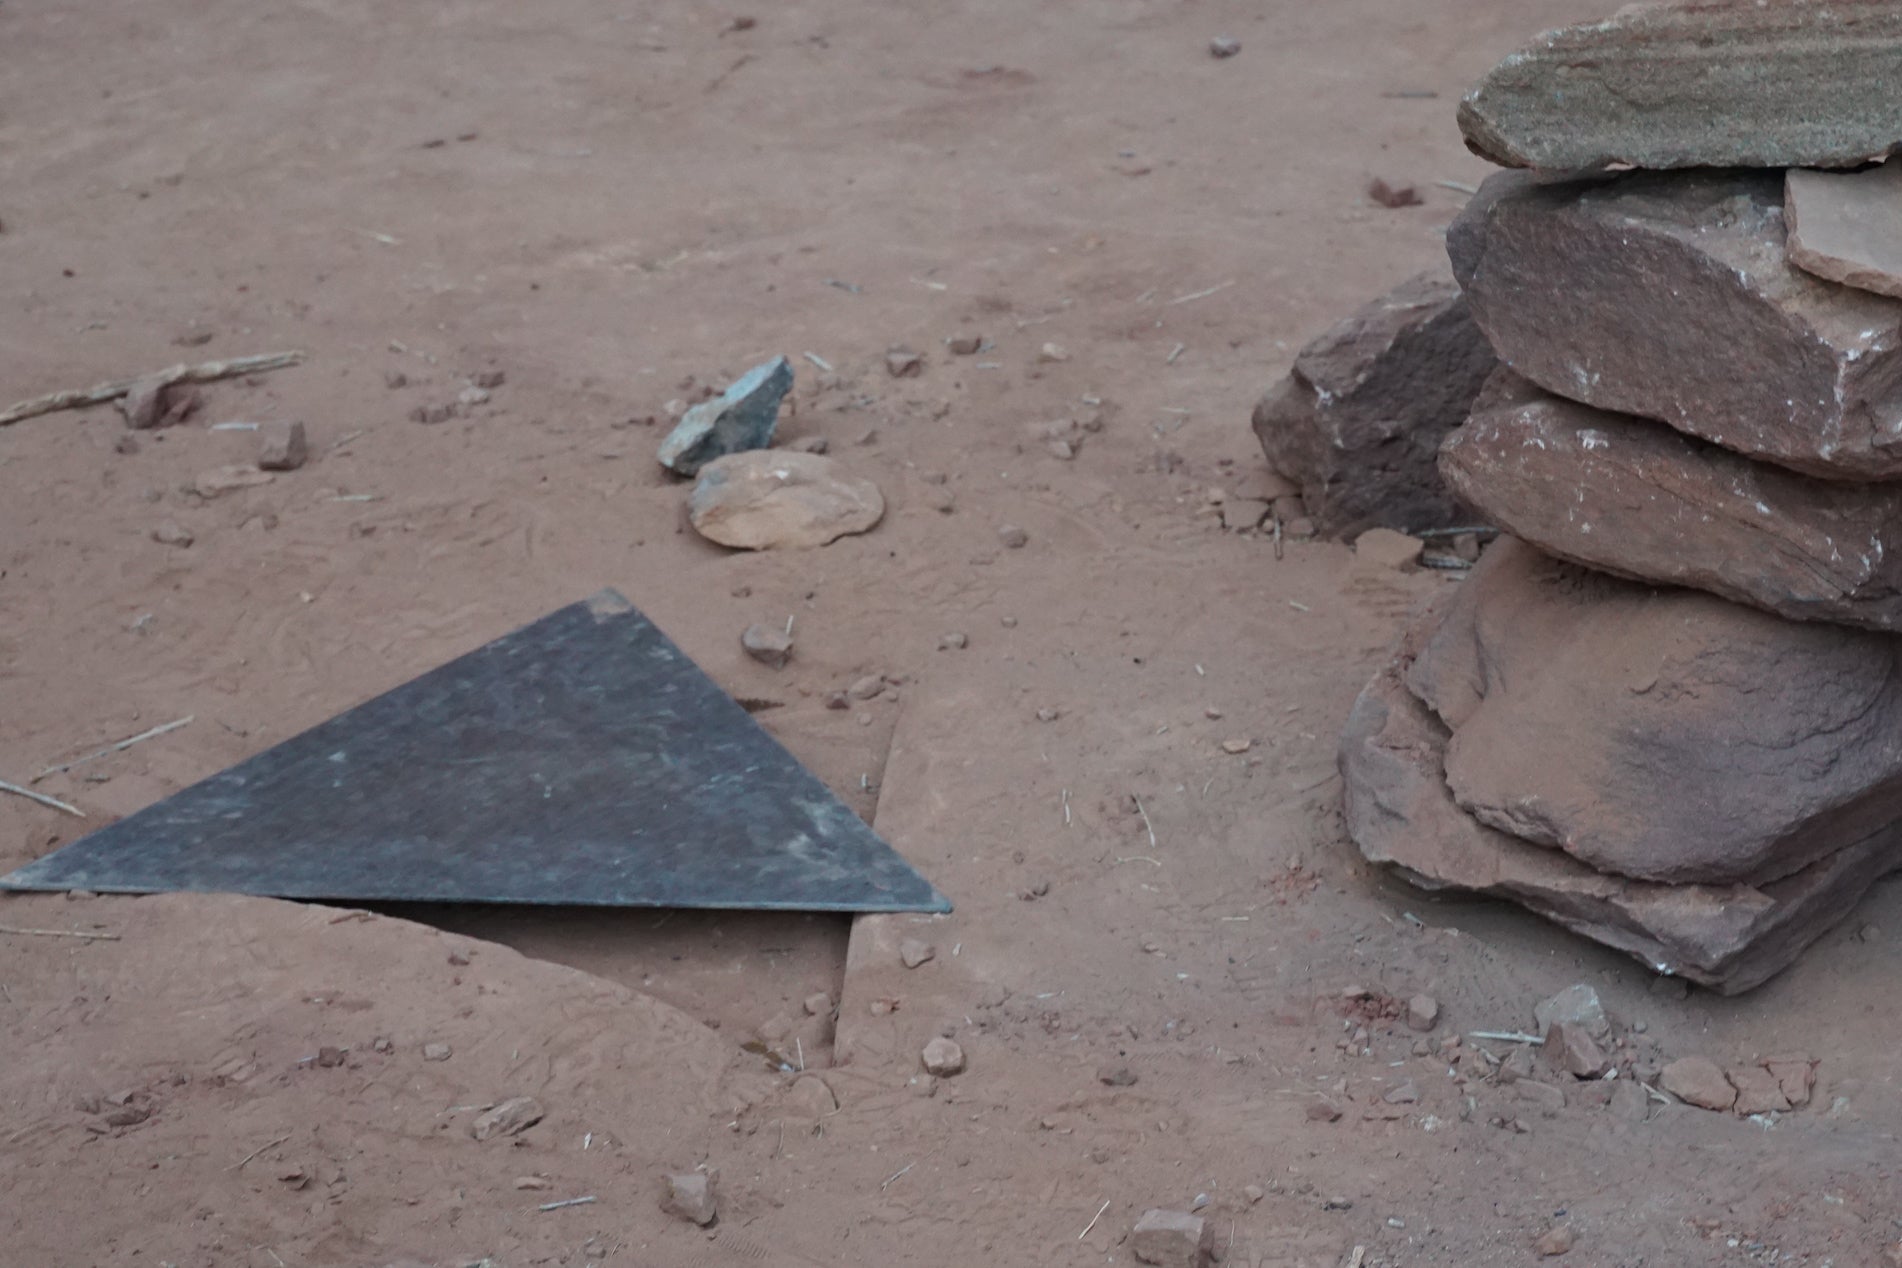 A triangular piece of metal next to a cairn